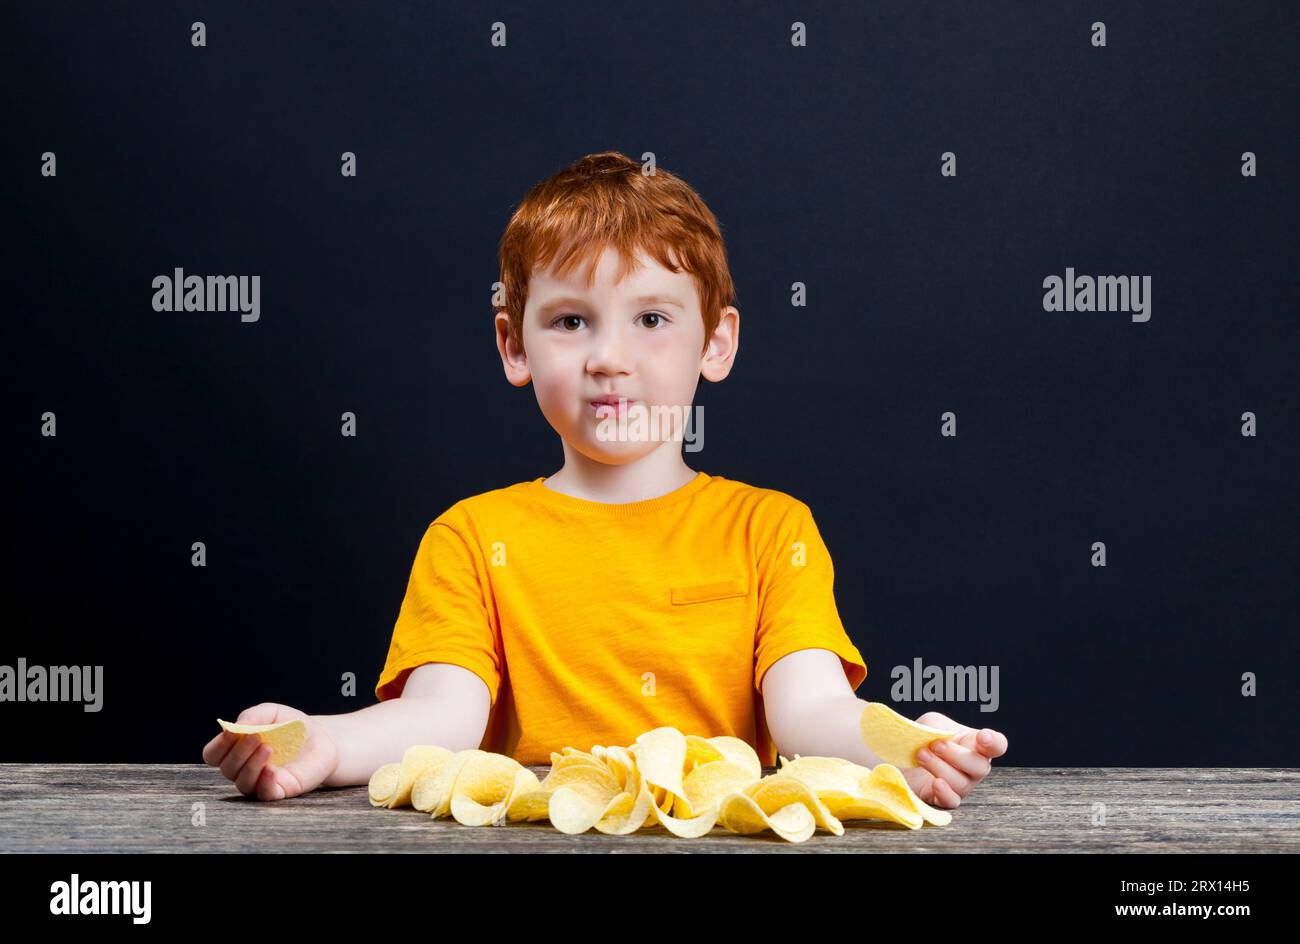 patatine croccanti deliziose che un bambino con i capelli rossi mangia, cibo nocivo, ma che il bambino vuole davvero mangiare, il ragazzo al tavolo, vicino Foto Stock